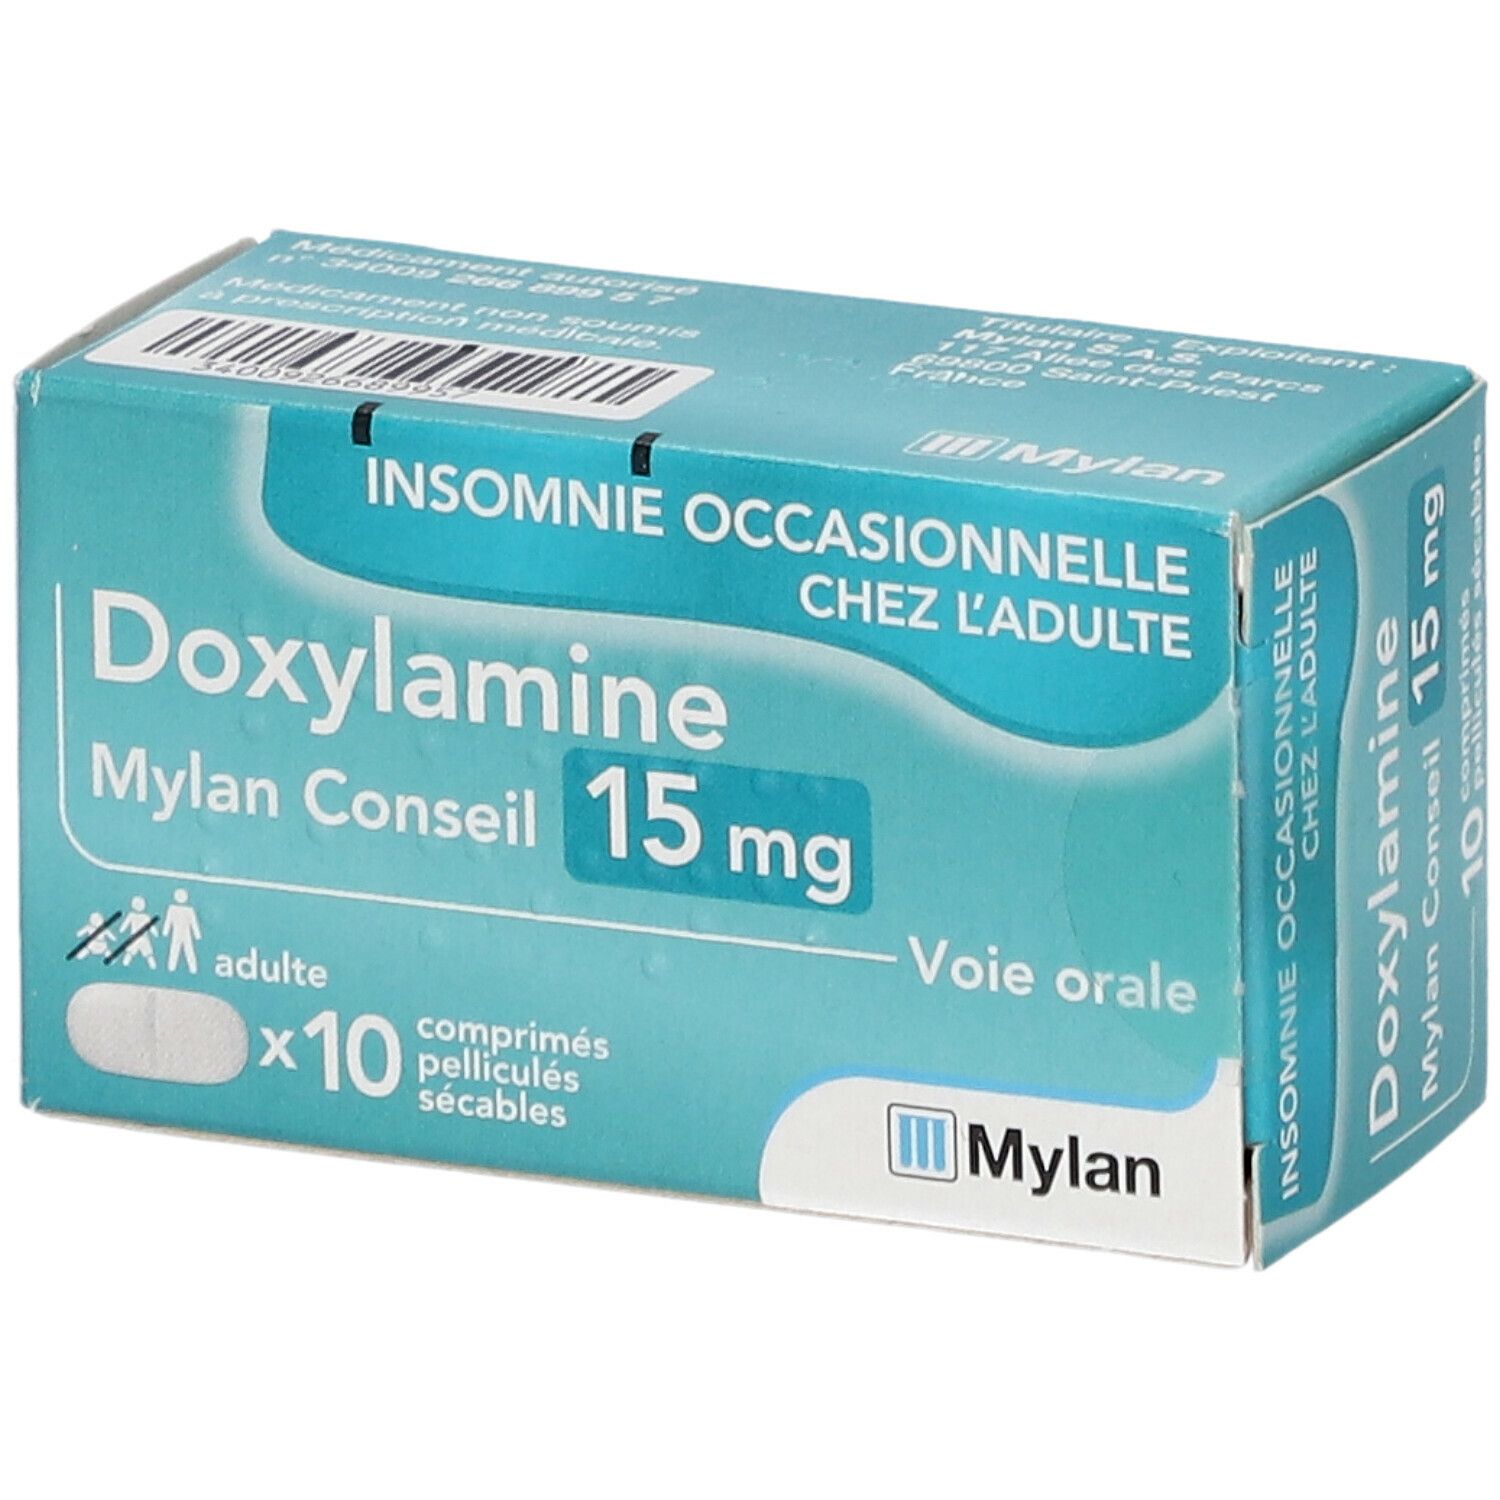 التأثيرات الجانبية لدواء الدوكسيلامين